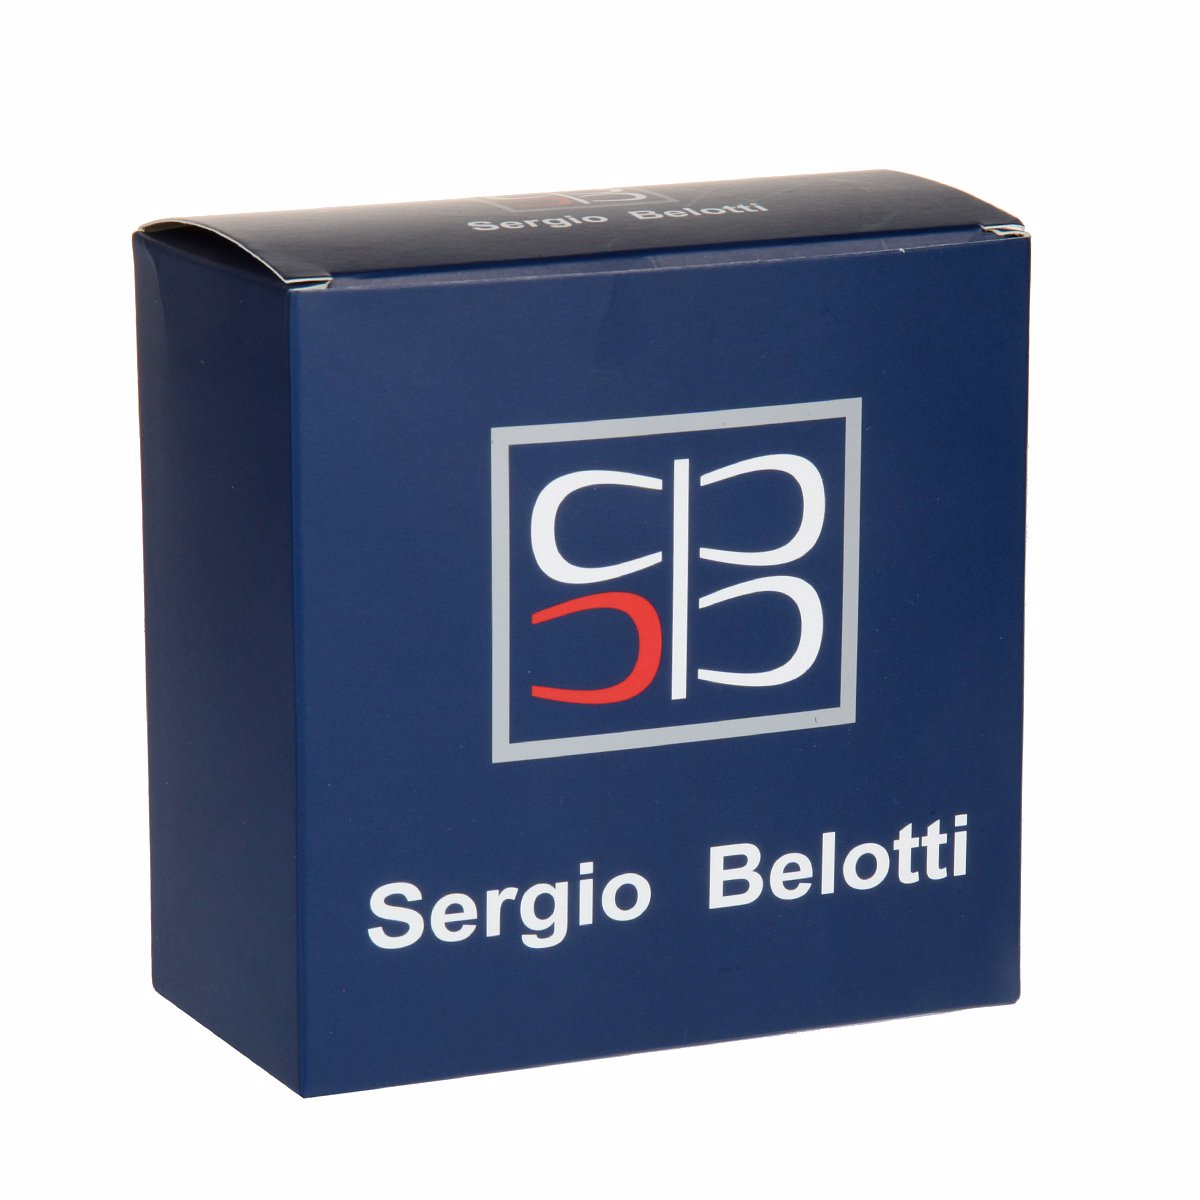 Ремень
Sergio Belotti
1018/40 Nero Ремни и пояса